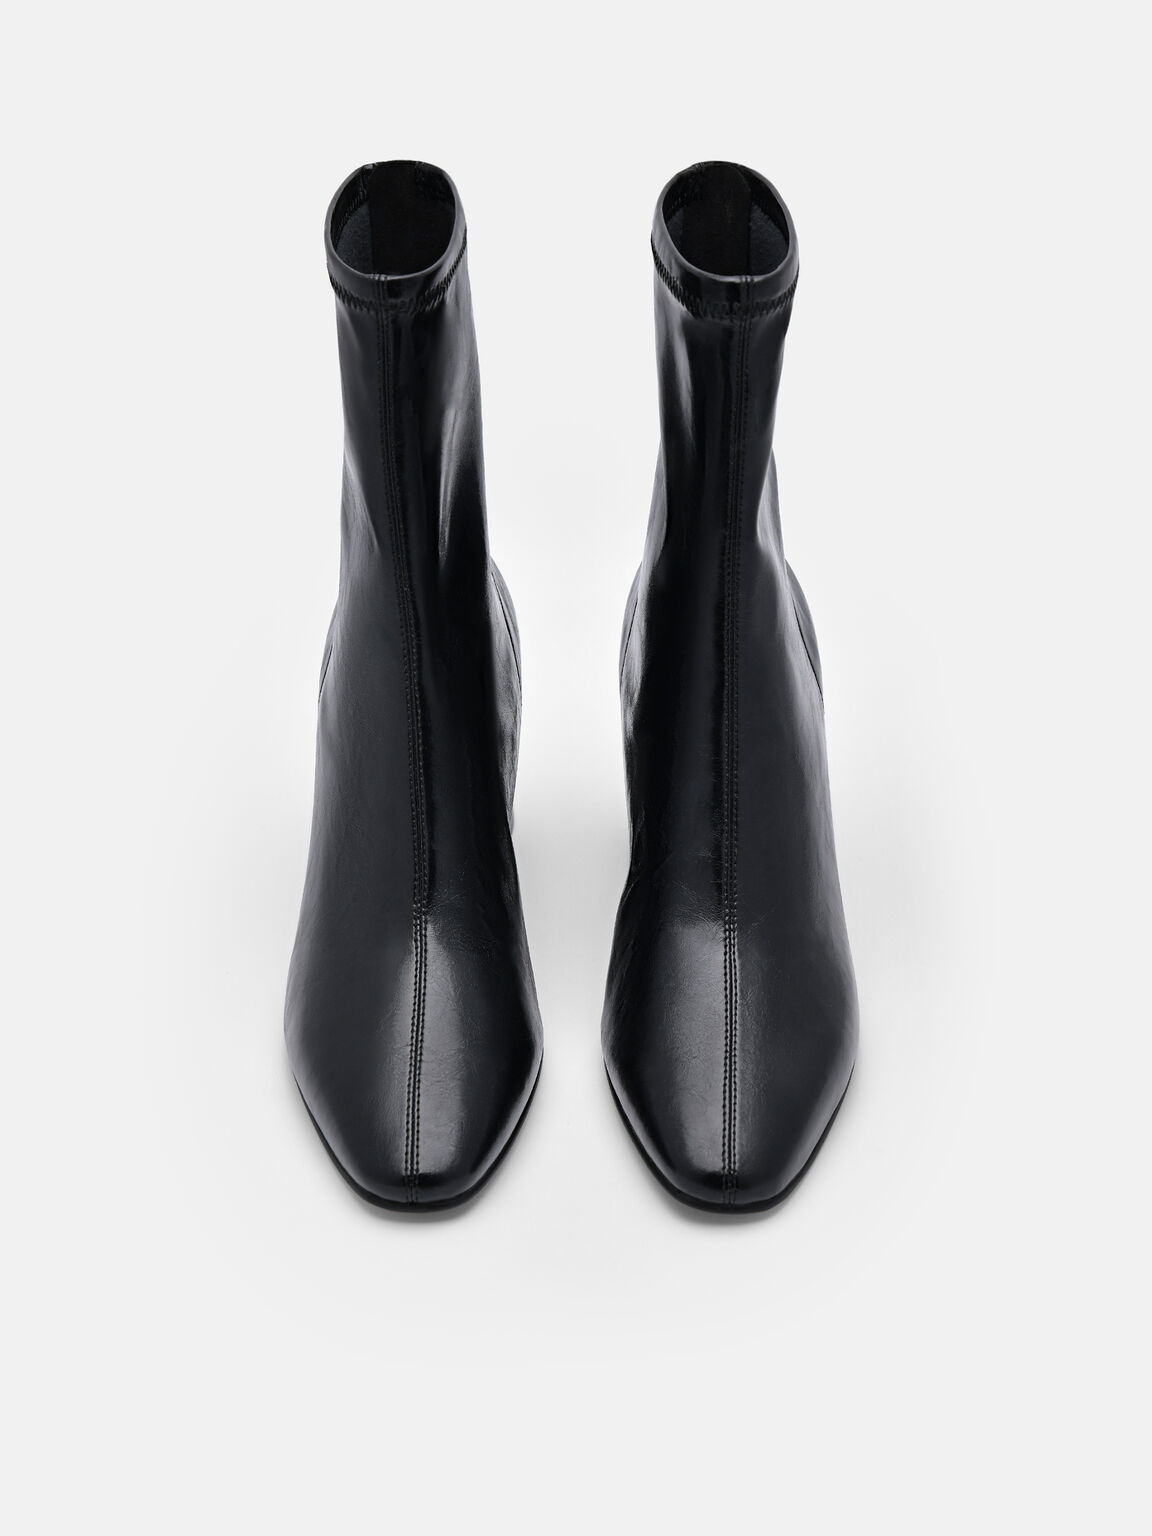 Alana Heel Boots, Black